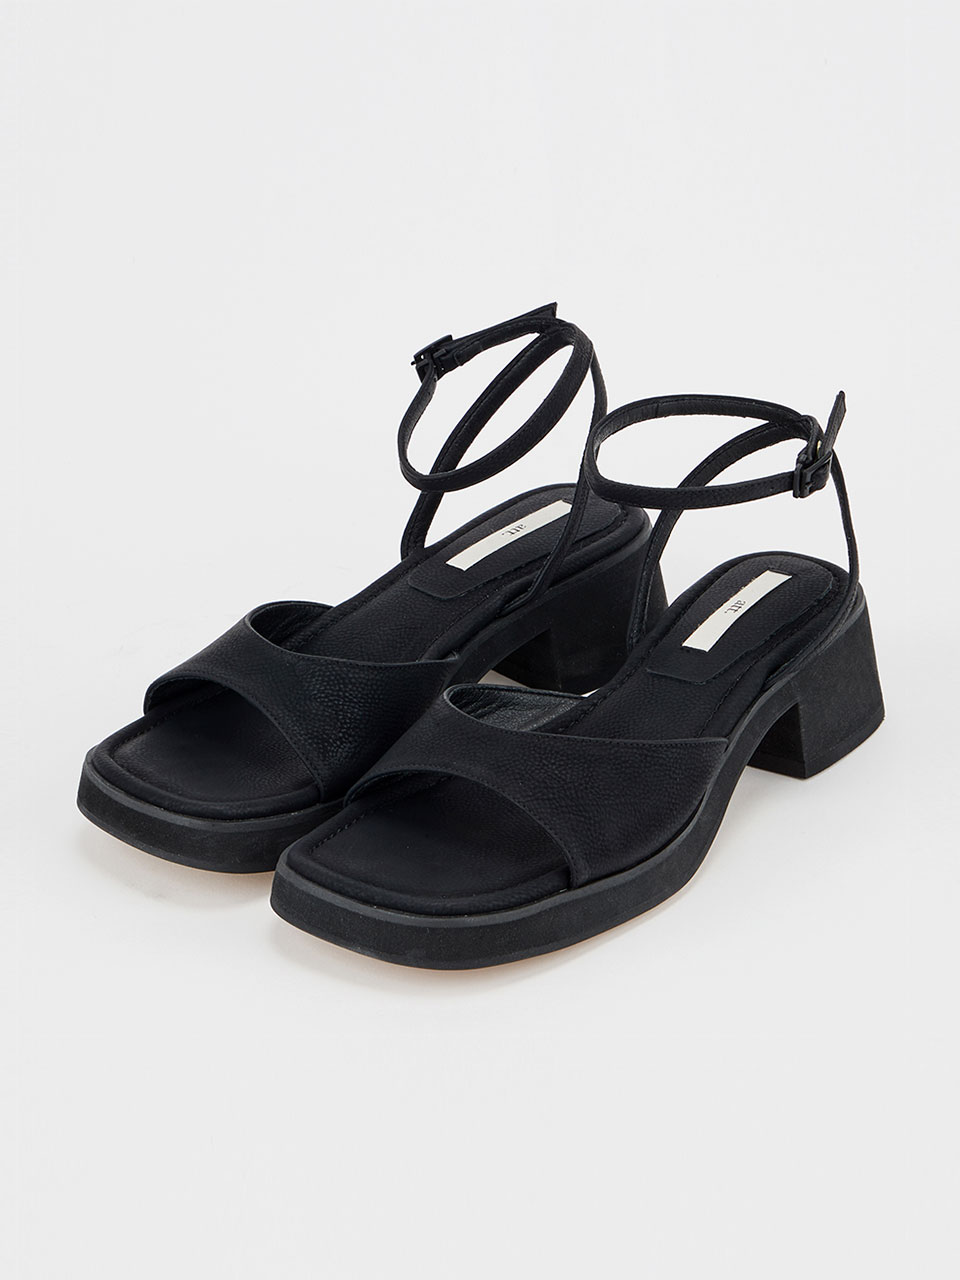 Basic platform sandals (Black)